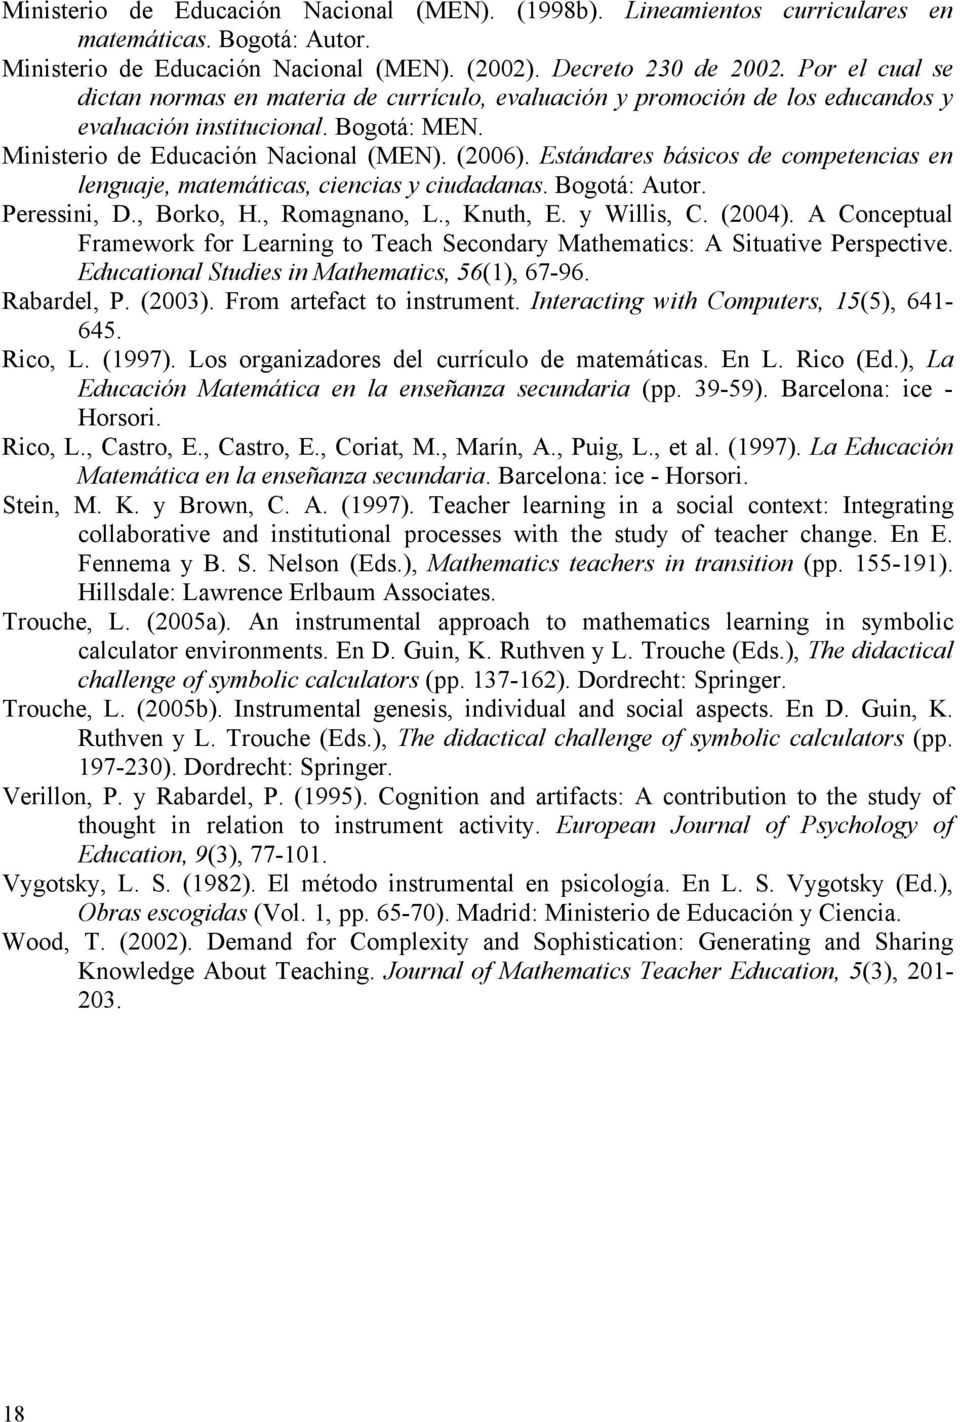 Estándares básicos de competencias en lenguaje, matemáticas, ciencias y ciudadanas. Bogotá: Autor. Peressini, D., Borko, H., Romagnano, L., Knuth, E. y Willis, C. (2004).